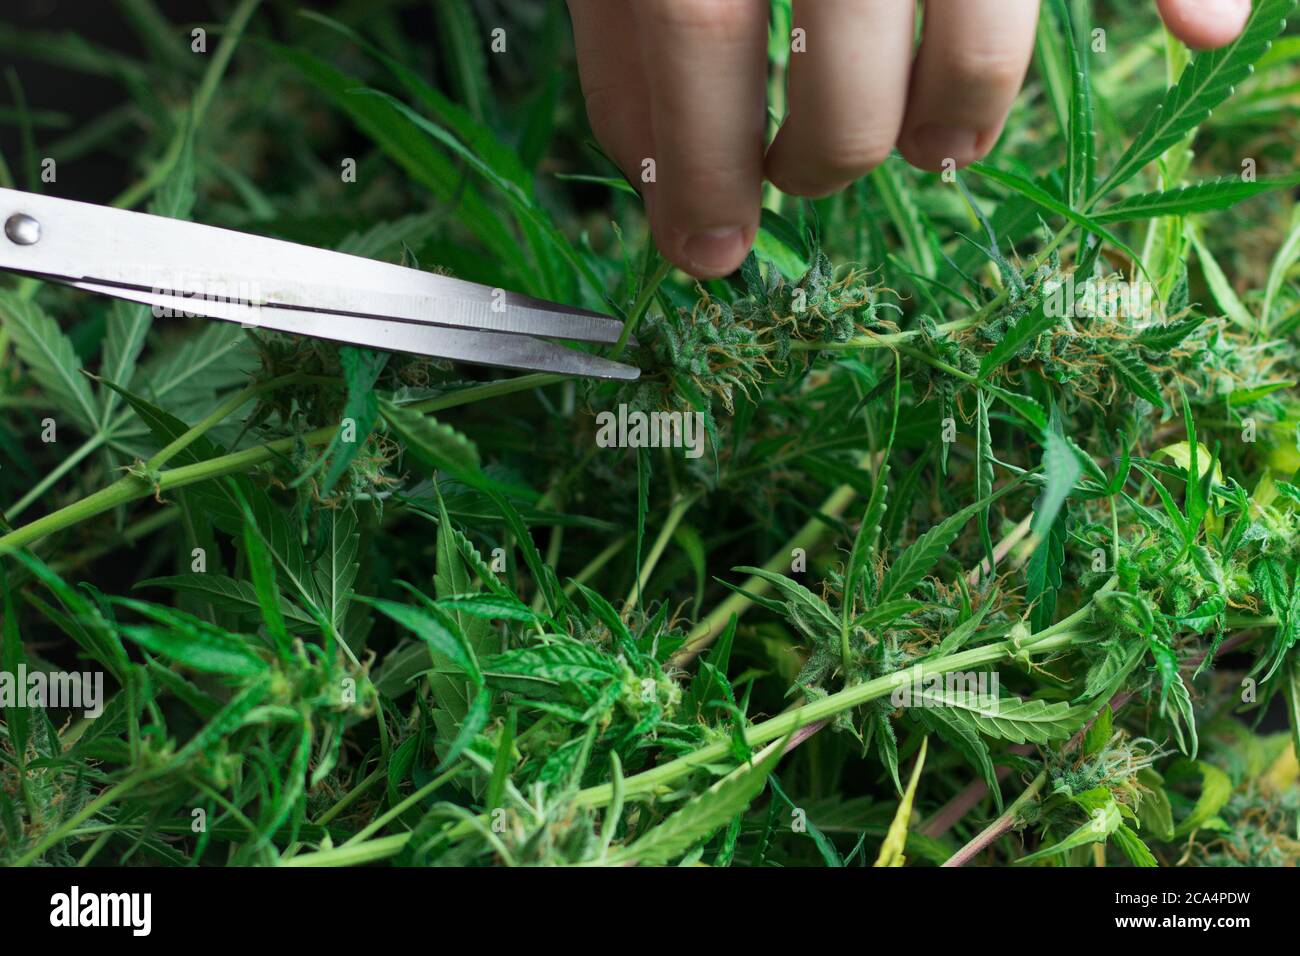 Mann, der mit Marihuanapflanze arbeitet. Schneiden von Cannabisblättern. Unkrautknospen ernten. Verwendung der Schere Stockfoto